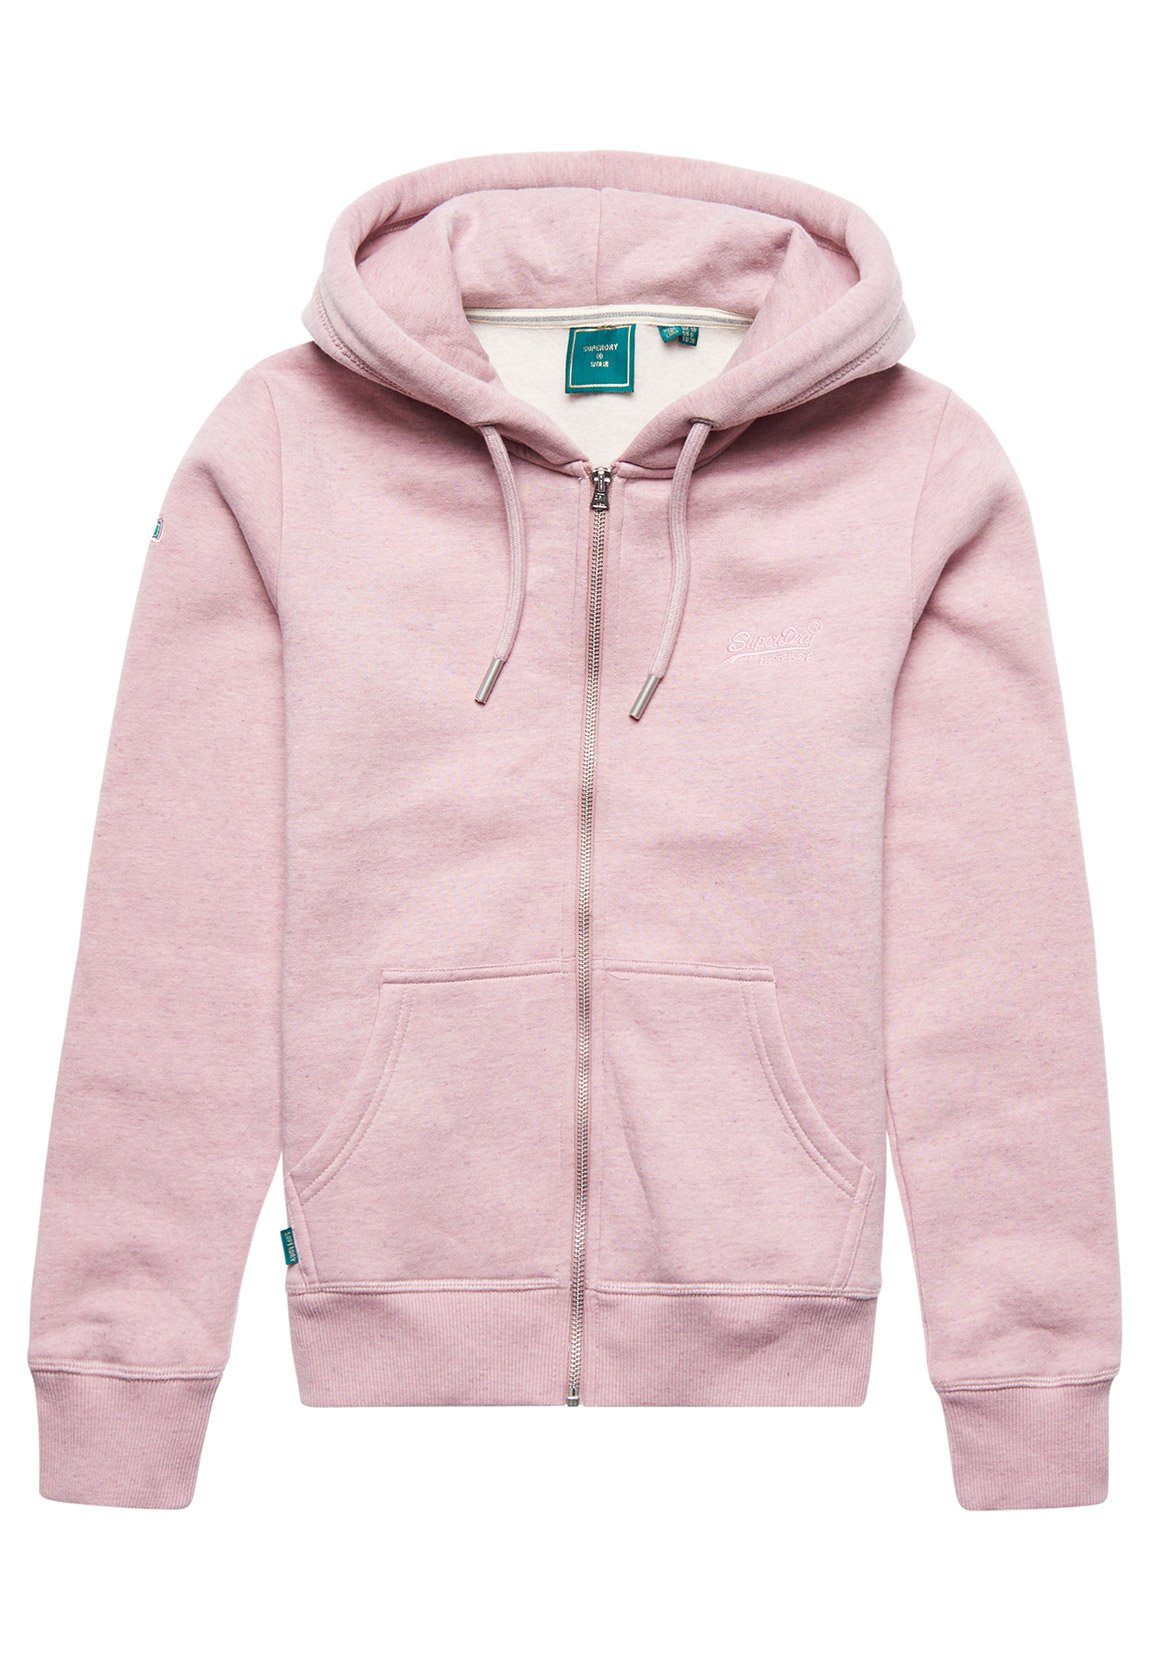 Superdry Sweatshirt »Superdry Damen Sweatjacke VINTAGE LOGO EMB ZIPHOOD  Soft Pink Marl Rosa« online kaufen | OTTO